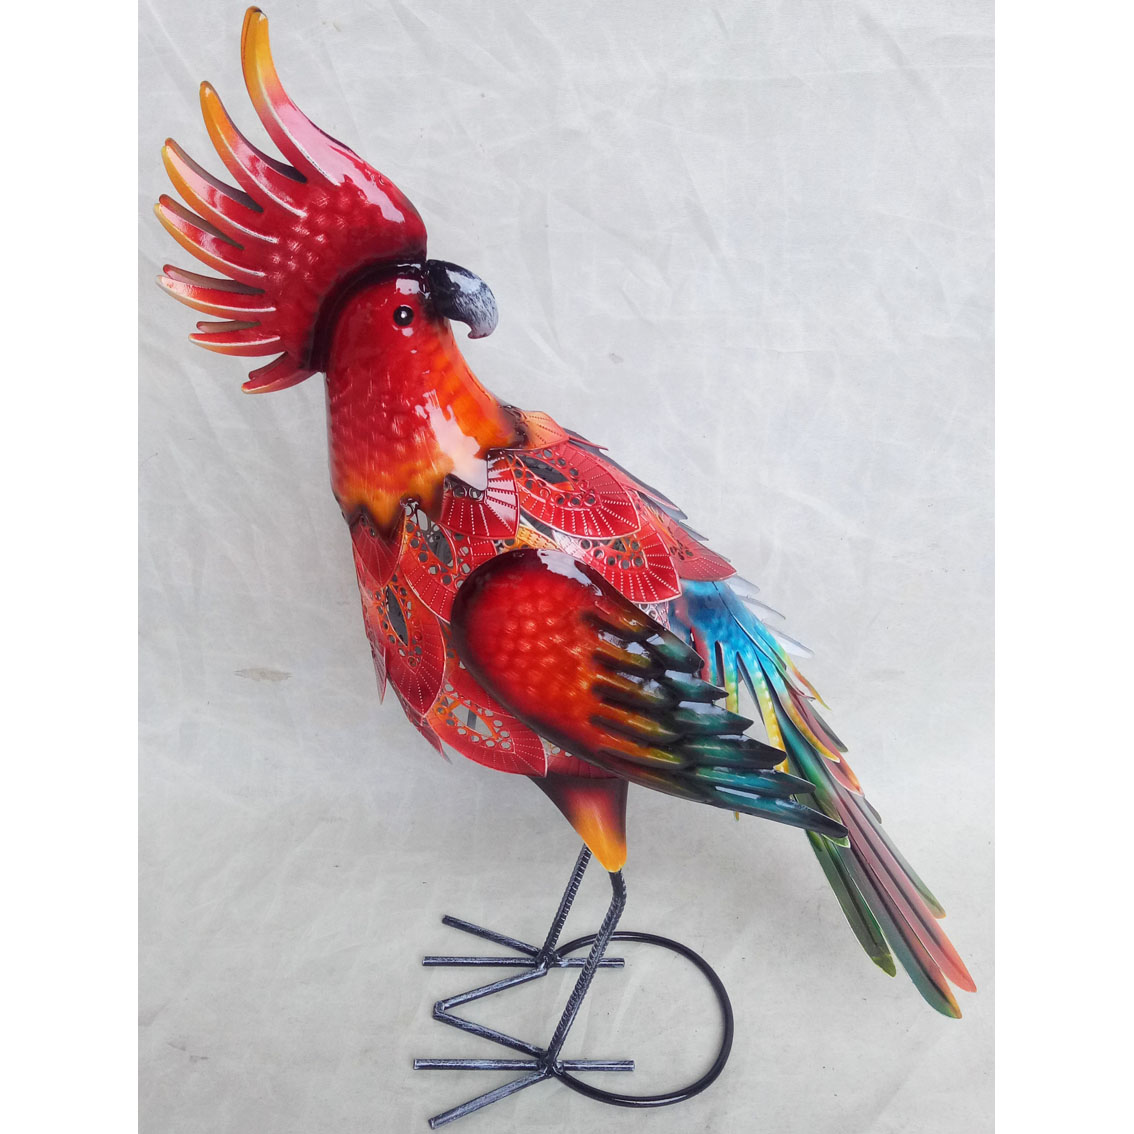 Hand-made metal garden decor bird ornament 